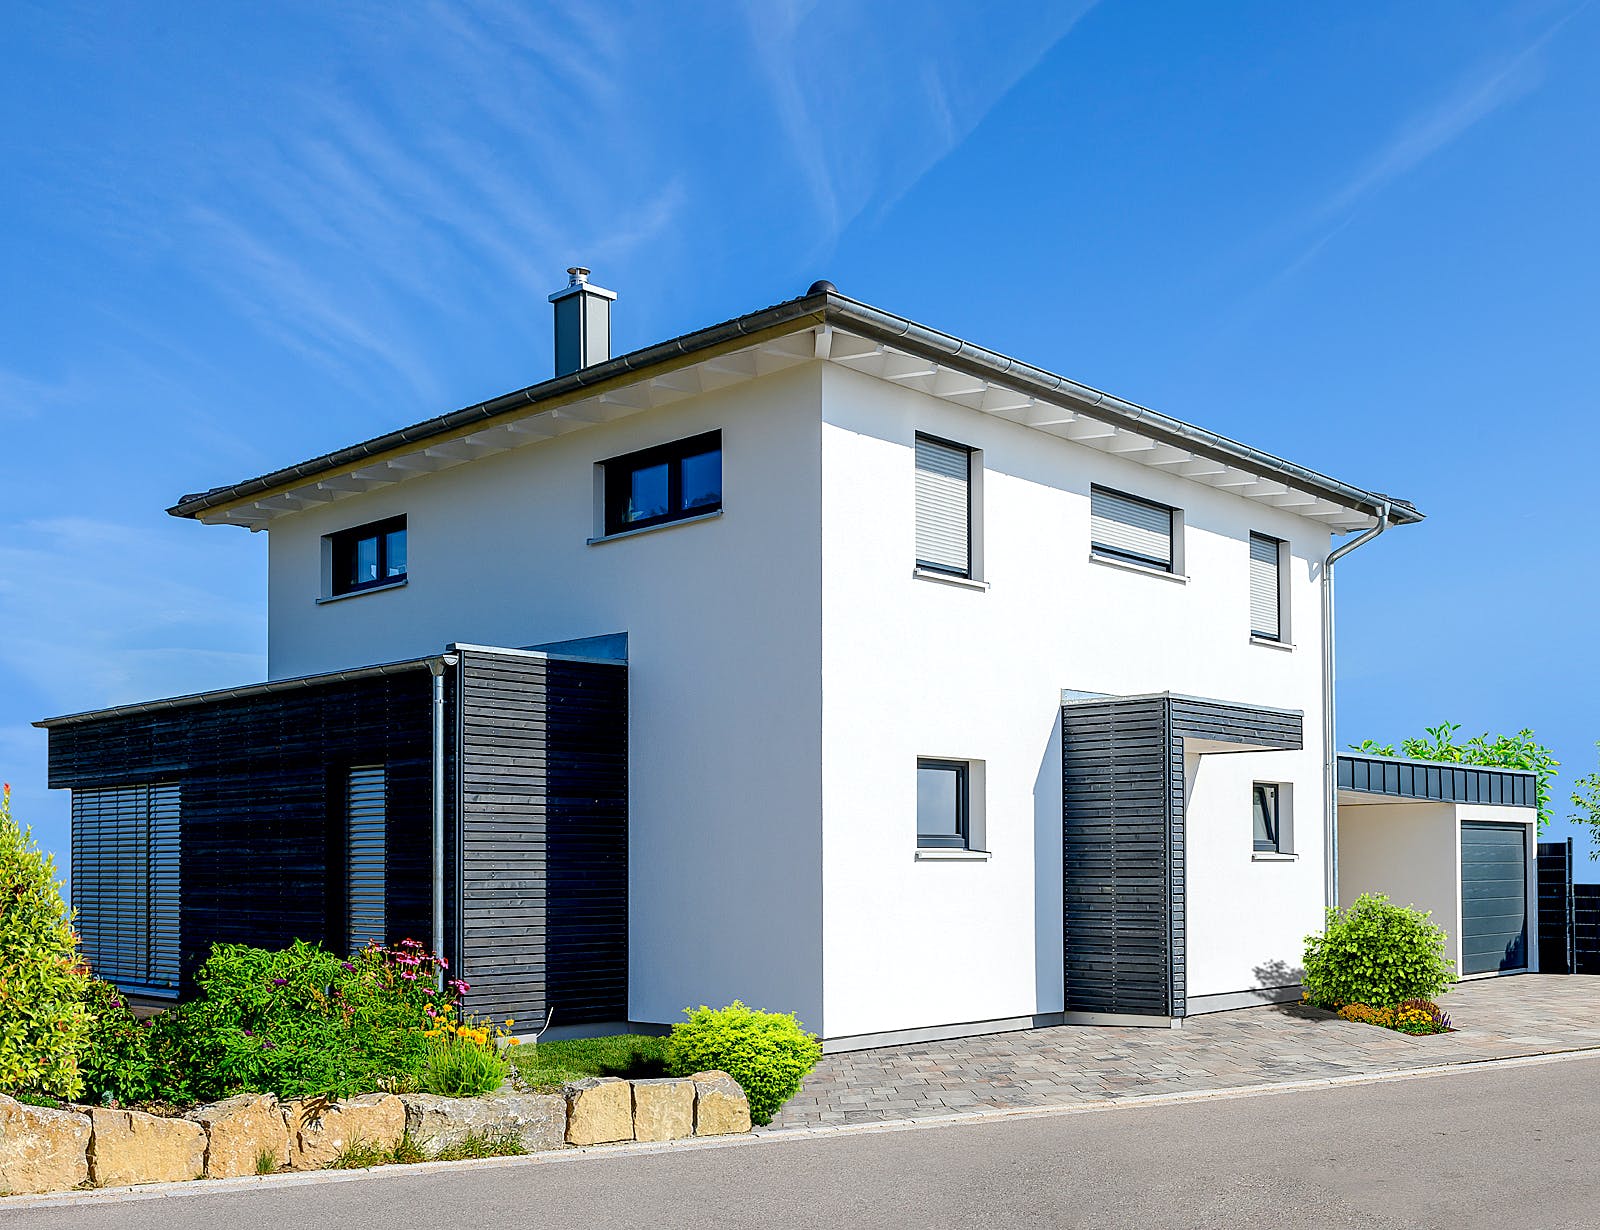 Fertighaus Einfamilienhaus mit Carport & Garage von Ziegler Haus Schlüsselfertig ab 250000€, Stadtvilla Außenansicht 1